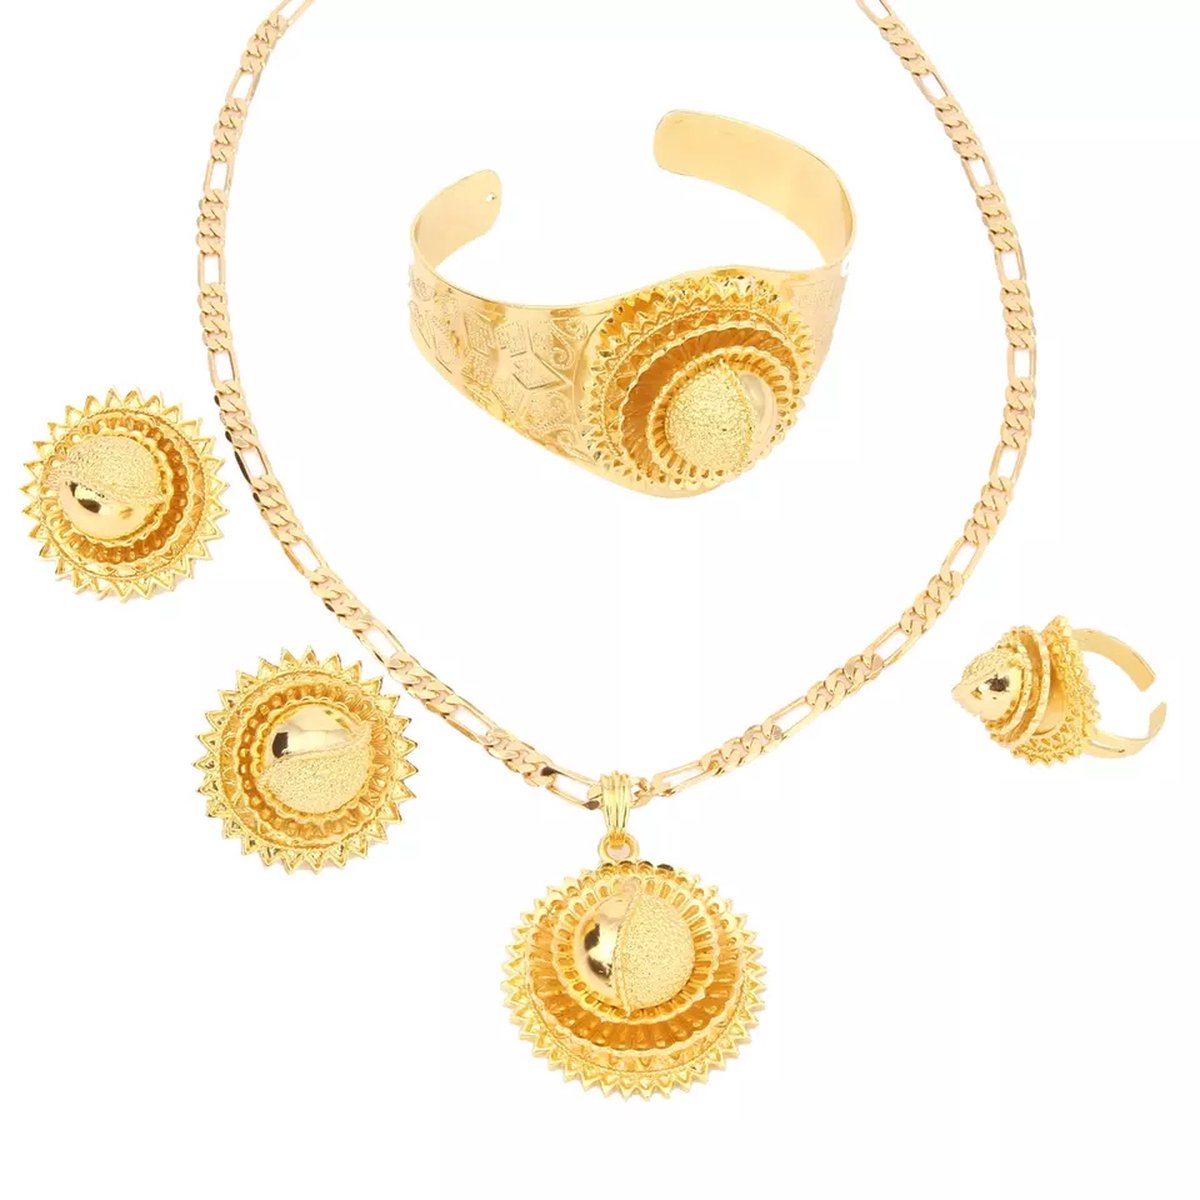 Nieuwe desine Ethiopische Eritrese sieraden set voor vrouwen,Ethiopische Eritrese Bruidssieraden Set Puur Goud Kleur 4 Sets Habesha Sieraden, Ethiopian gold jewelry